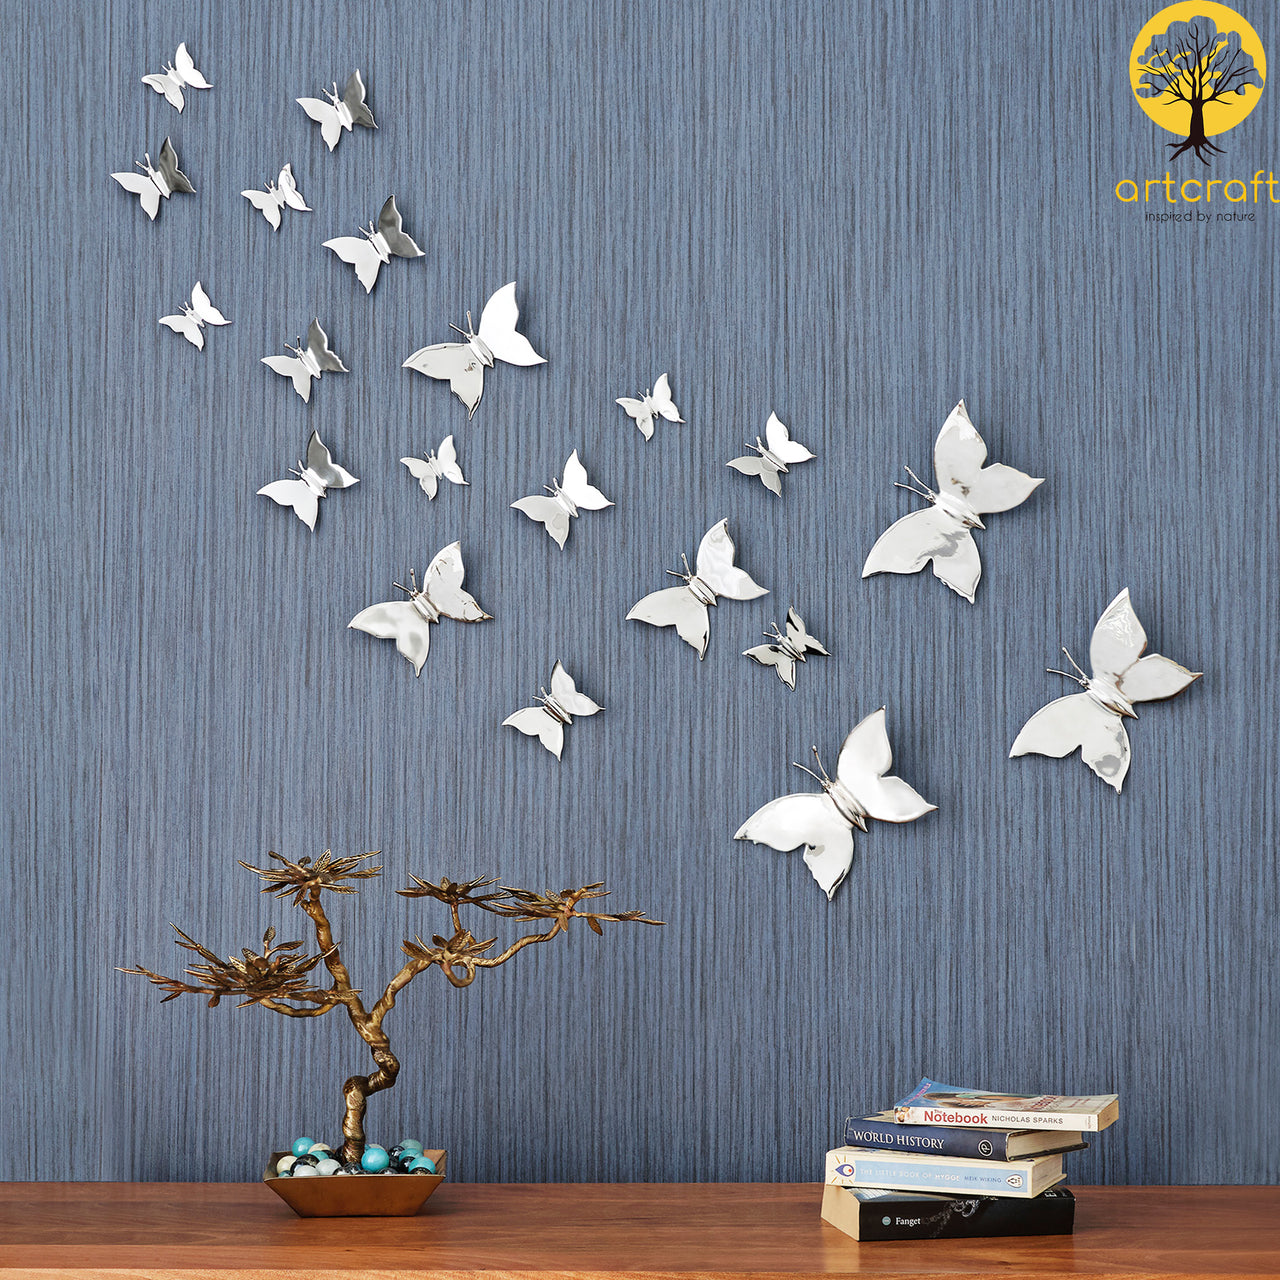 Chrome Butterfly Wall Decor – Artcraft